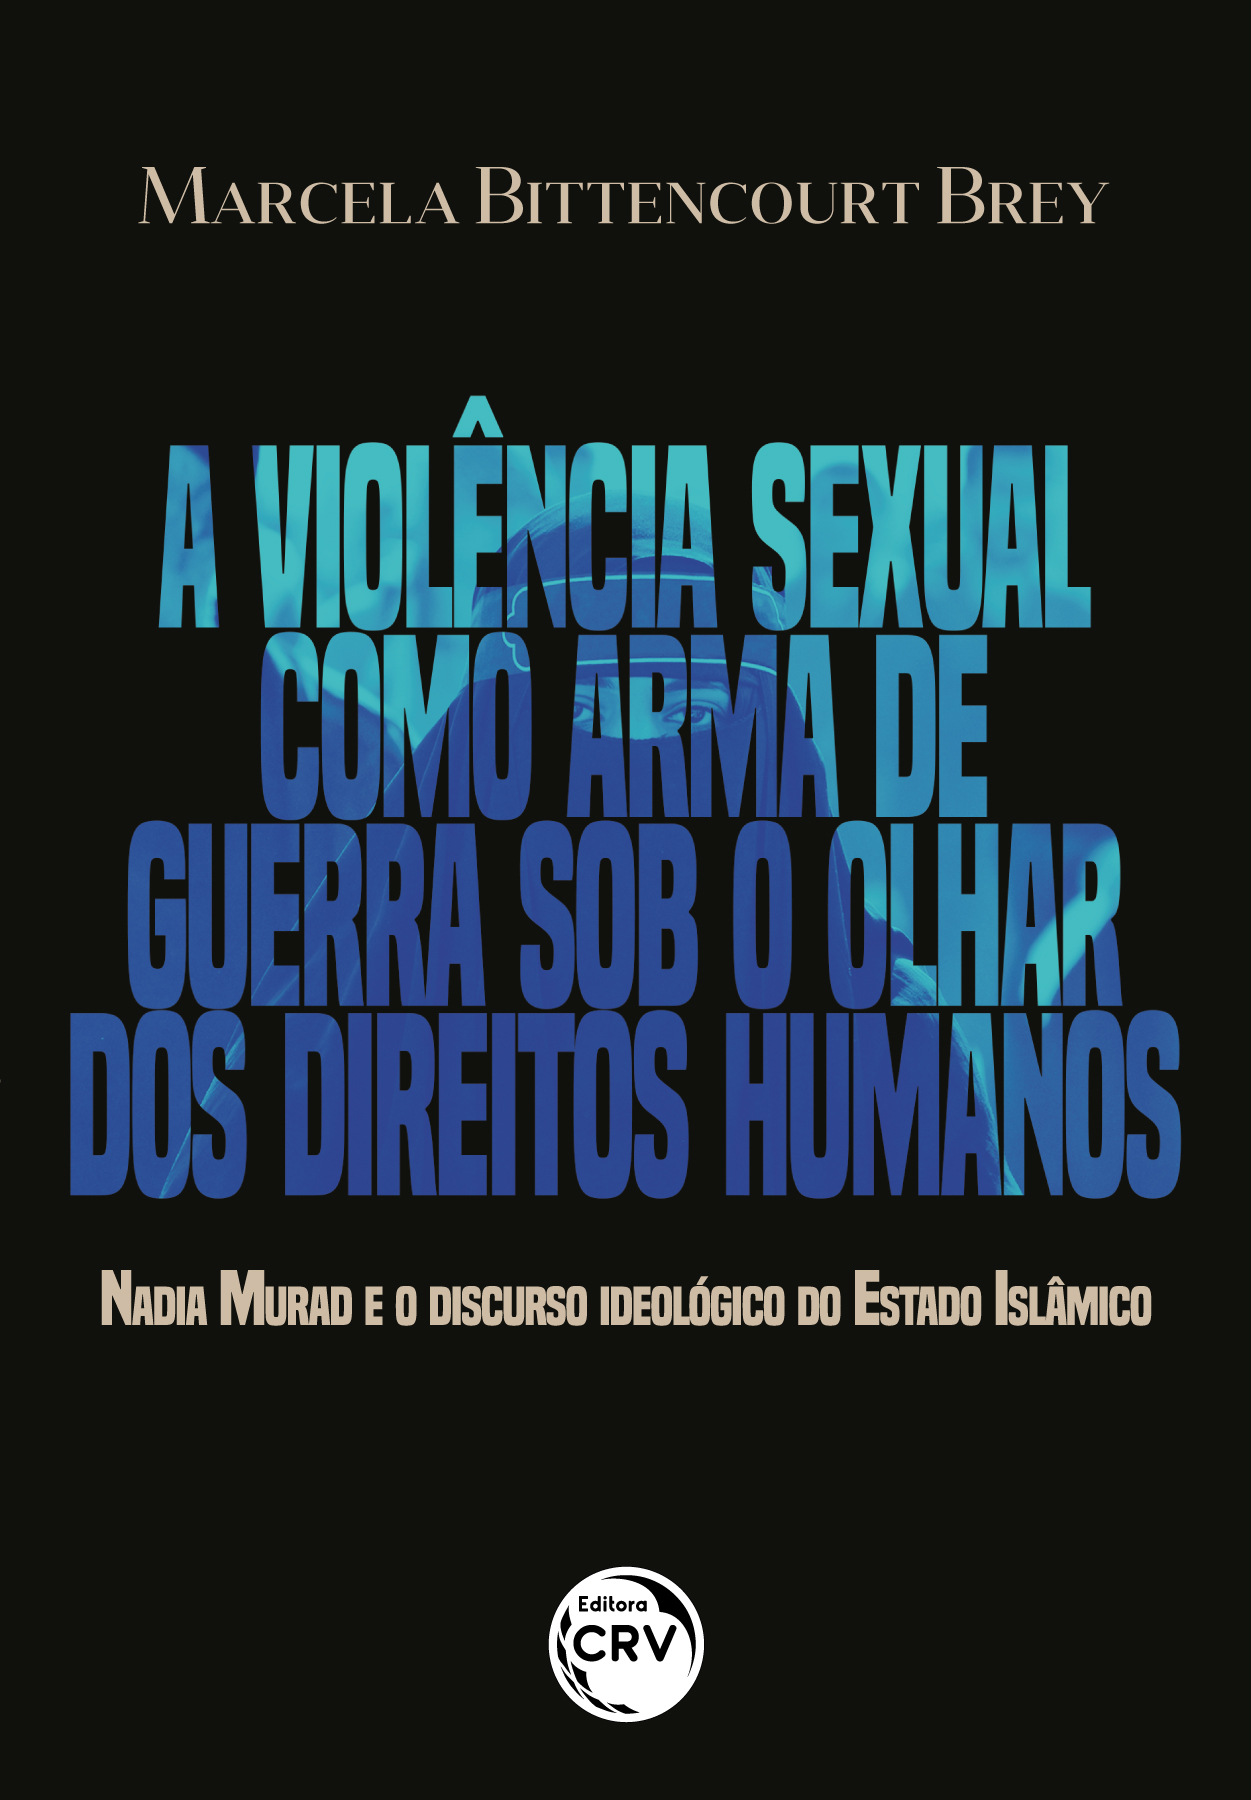 Capa do livro: A VIOLÊNCIA SEXUAL COMO ARMA DE GUERRA SOB O OLHAR DOS DIREITOS HUMANOS <BR> Nadia Murad e o discurso ideológico do Estado Islâmico